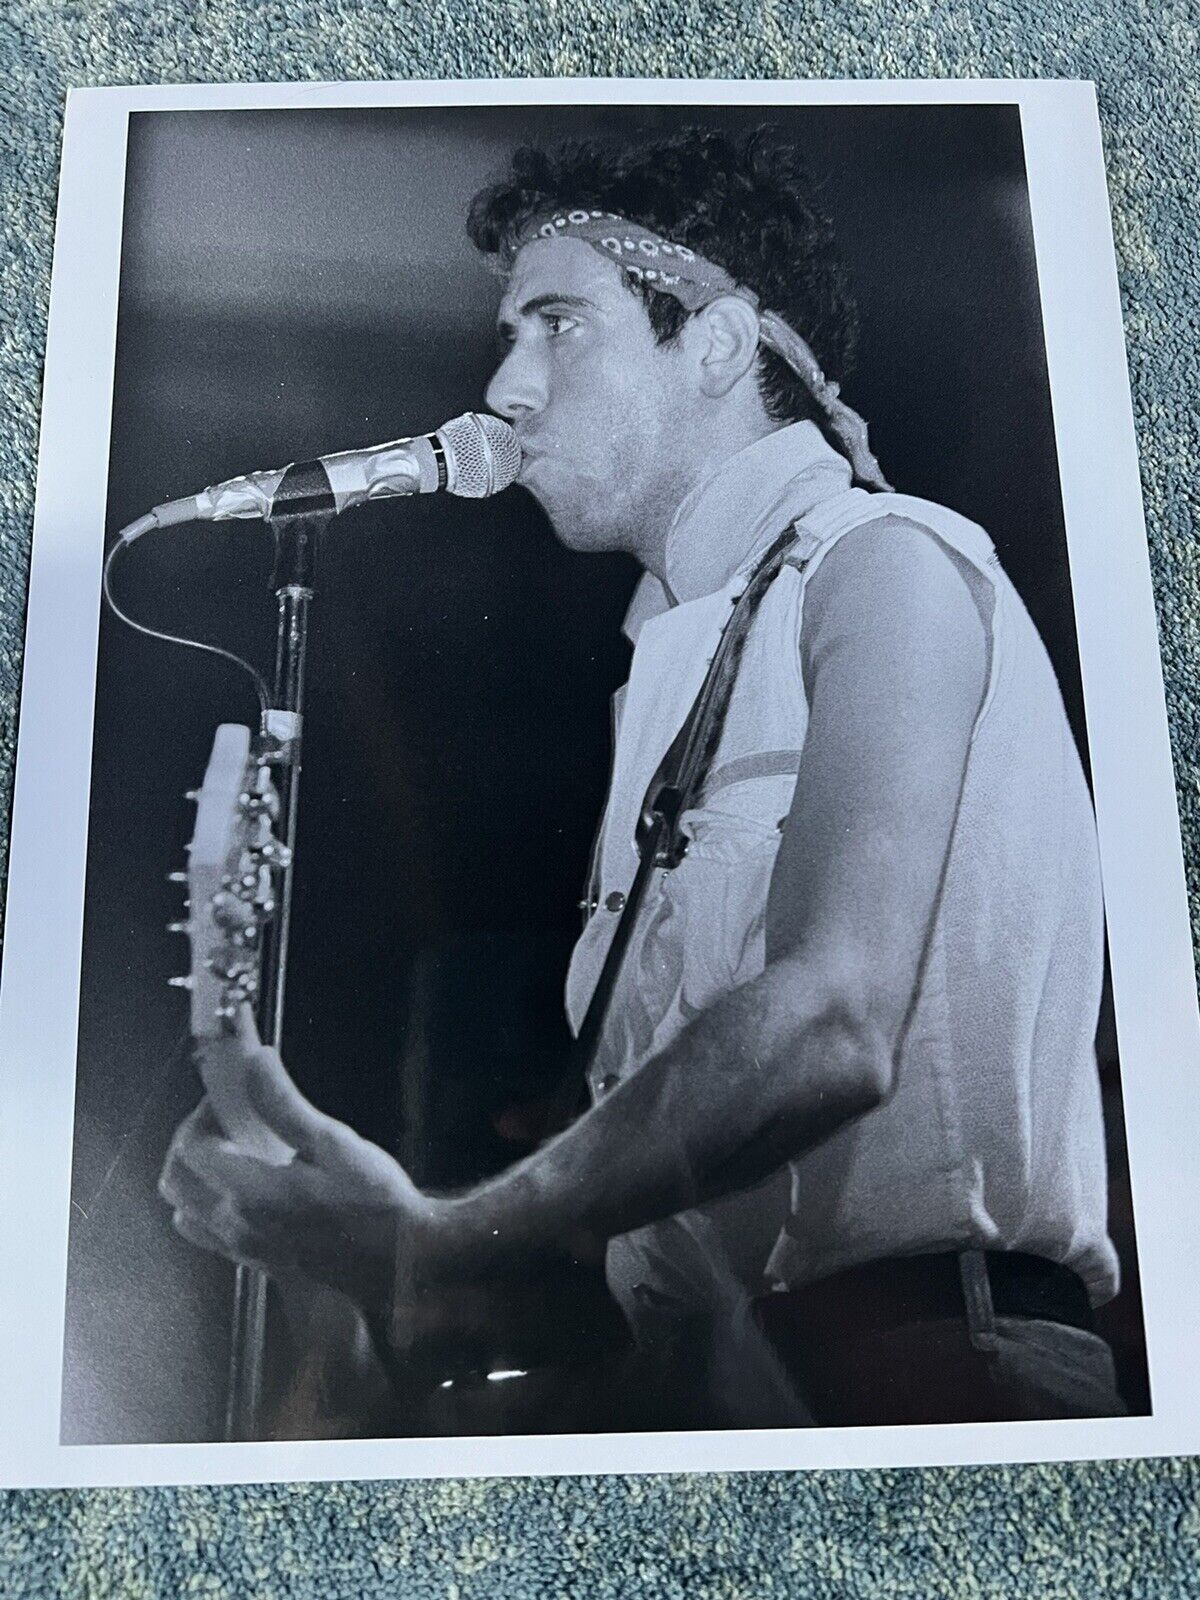 The Clash In Concert Vintage Original 8x10 Photo Mick Jones Janet Macoska Photo